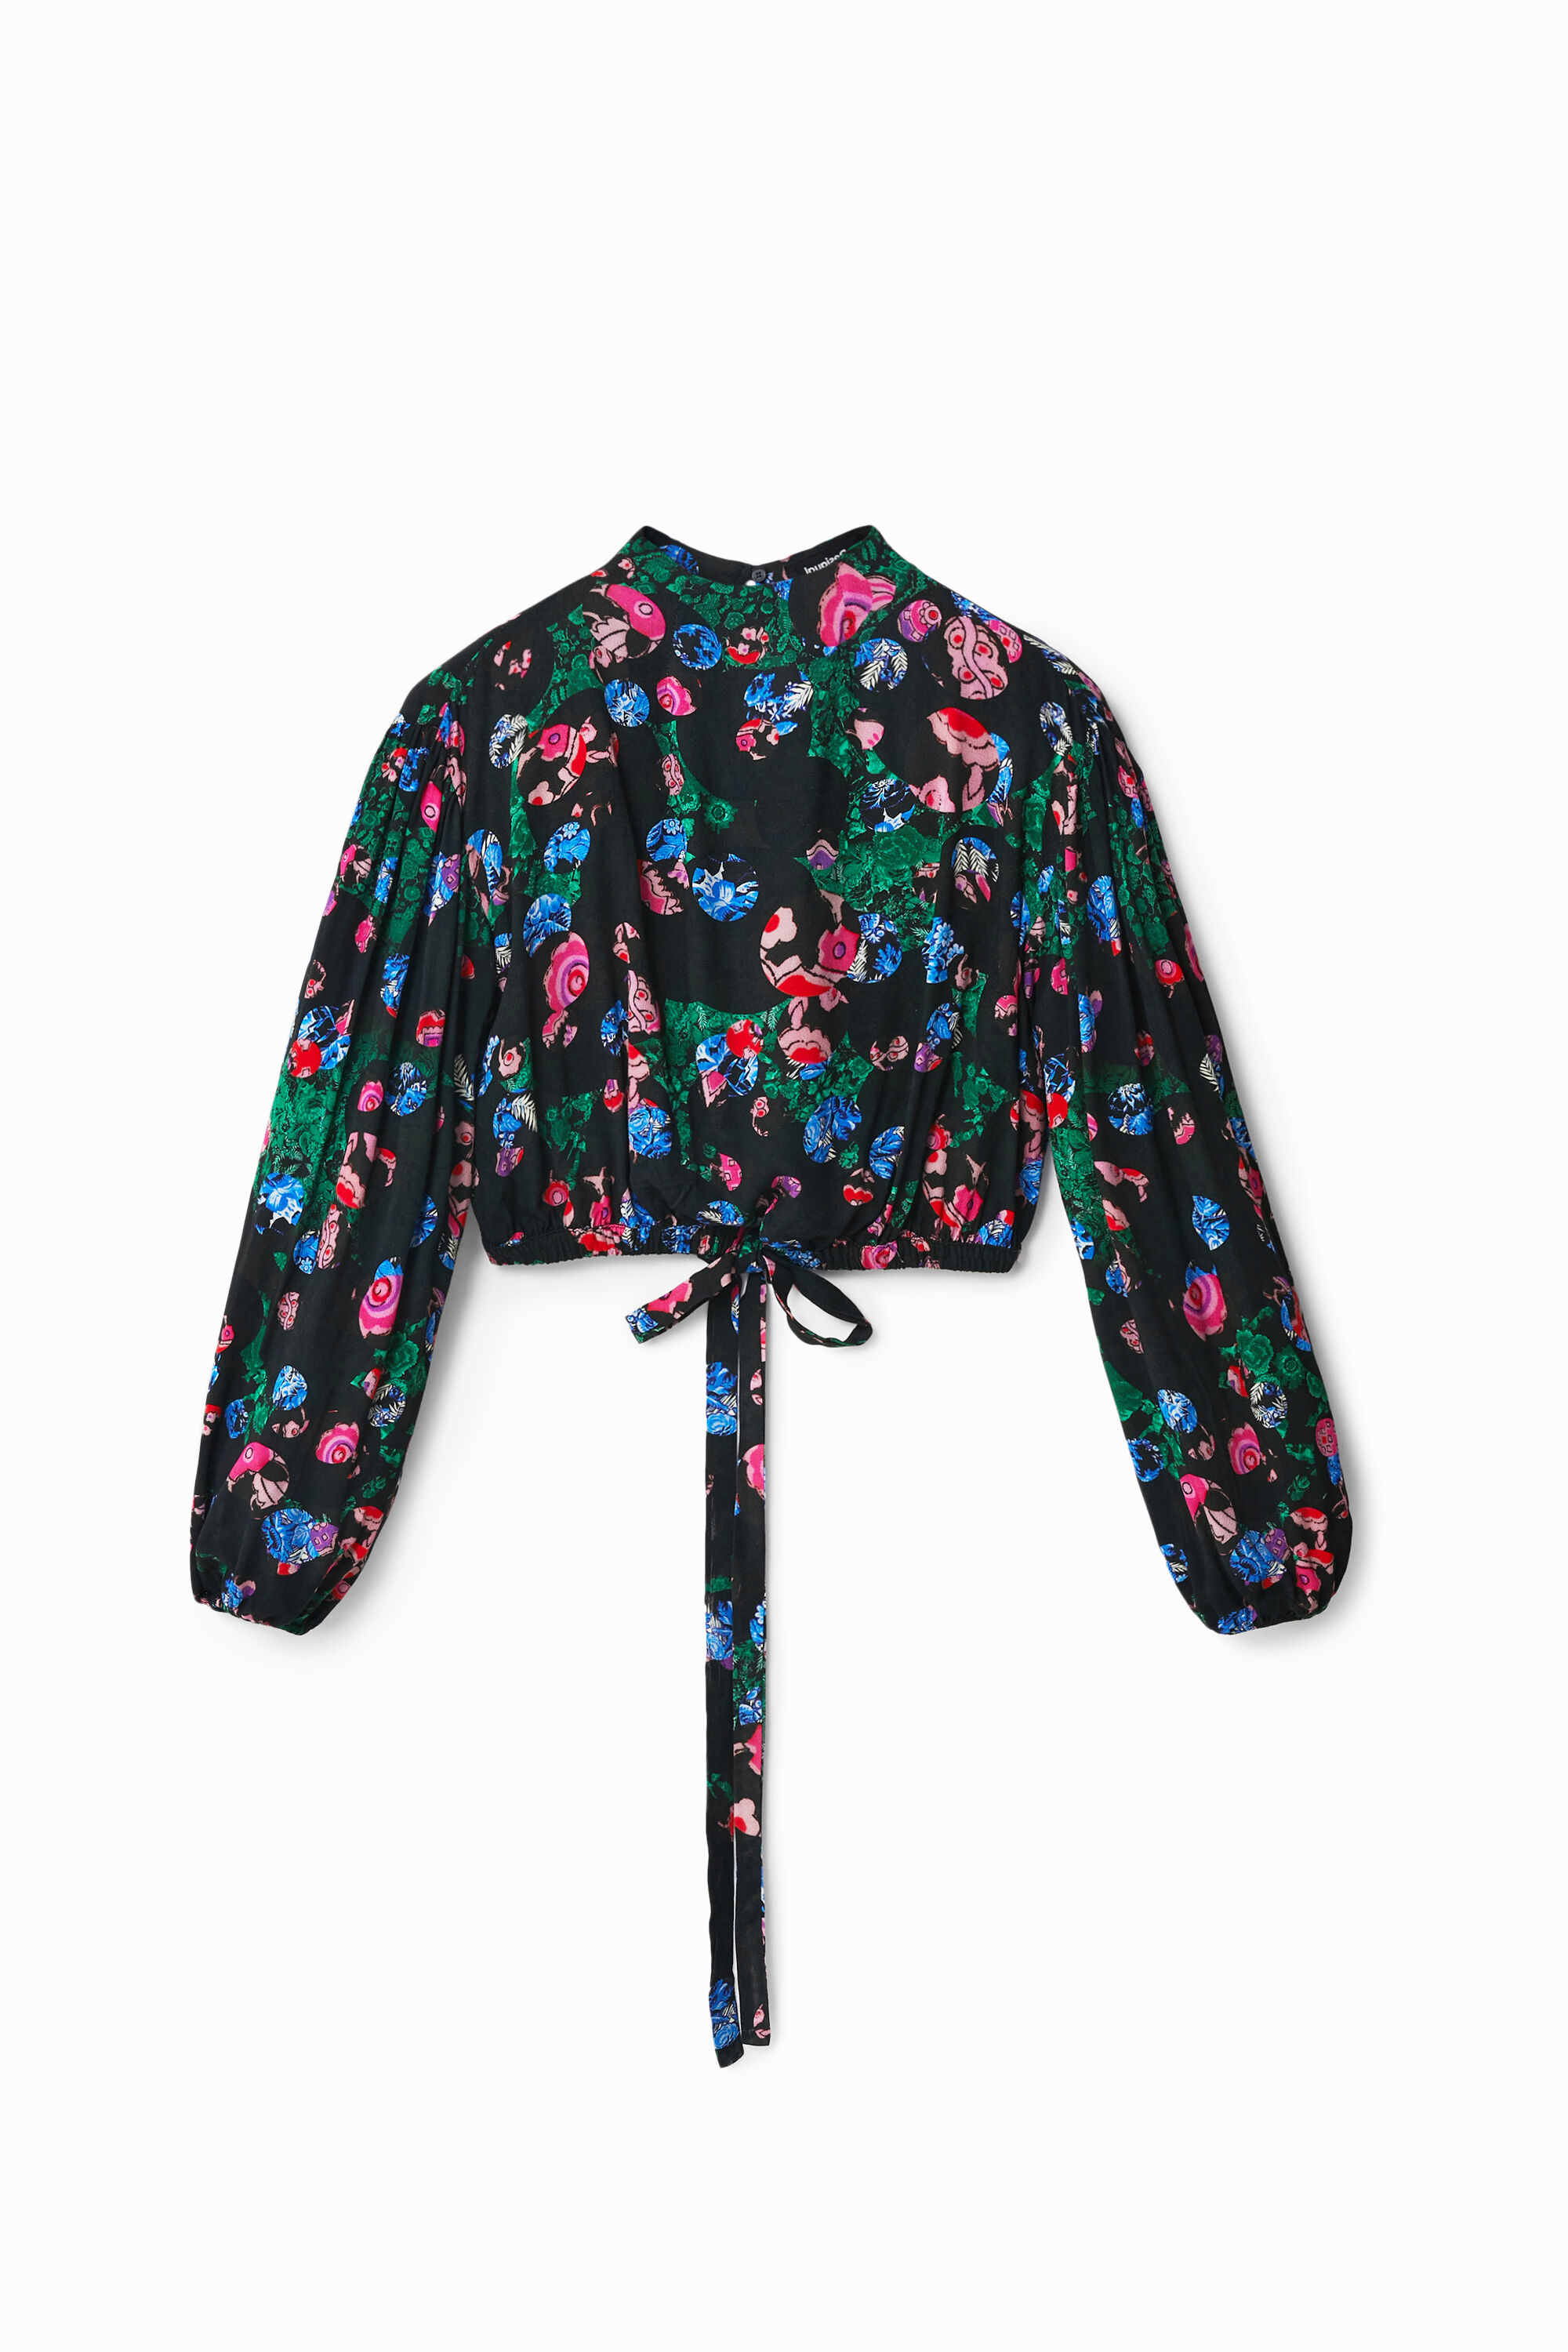 M. Christian Lacroix cropped floral blouse - BLACK - XL